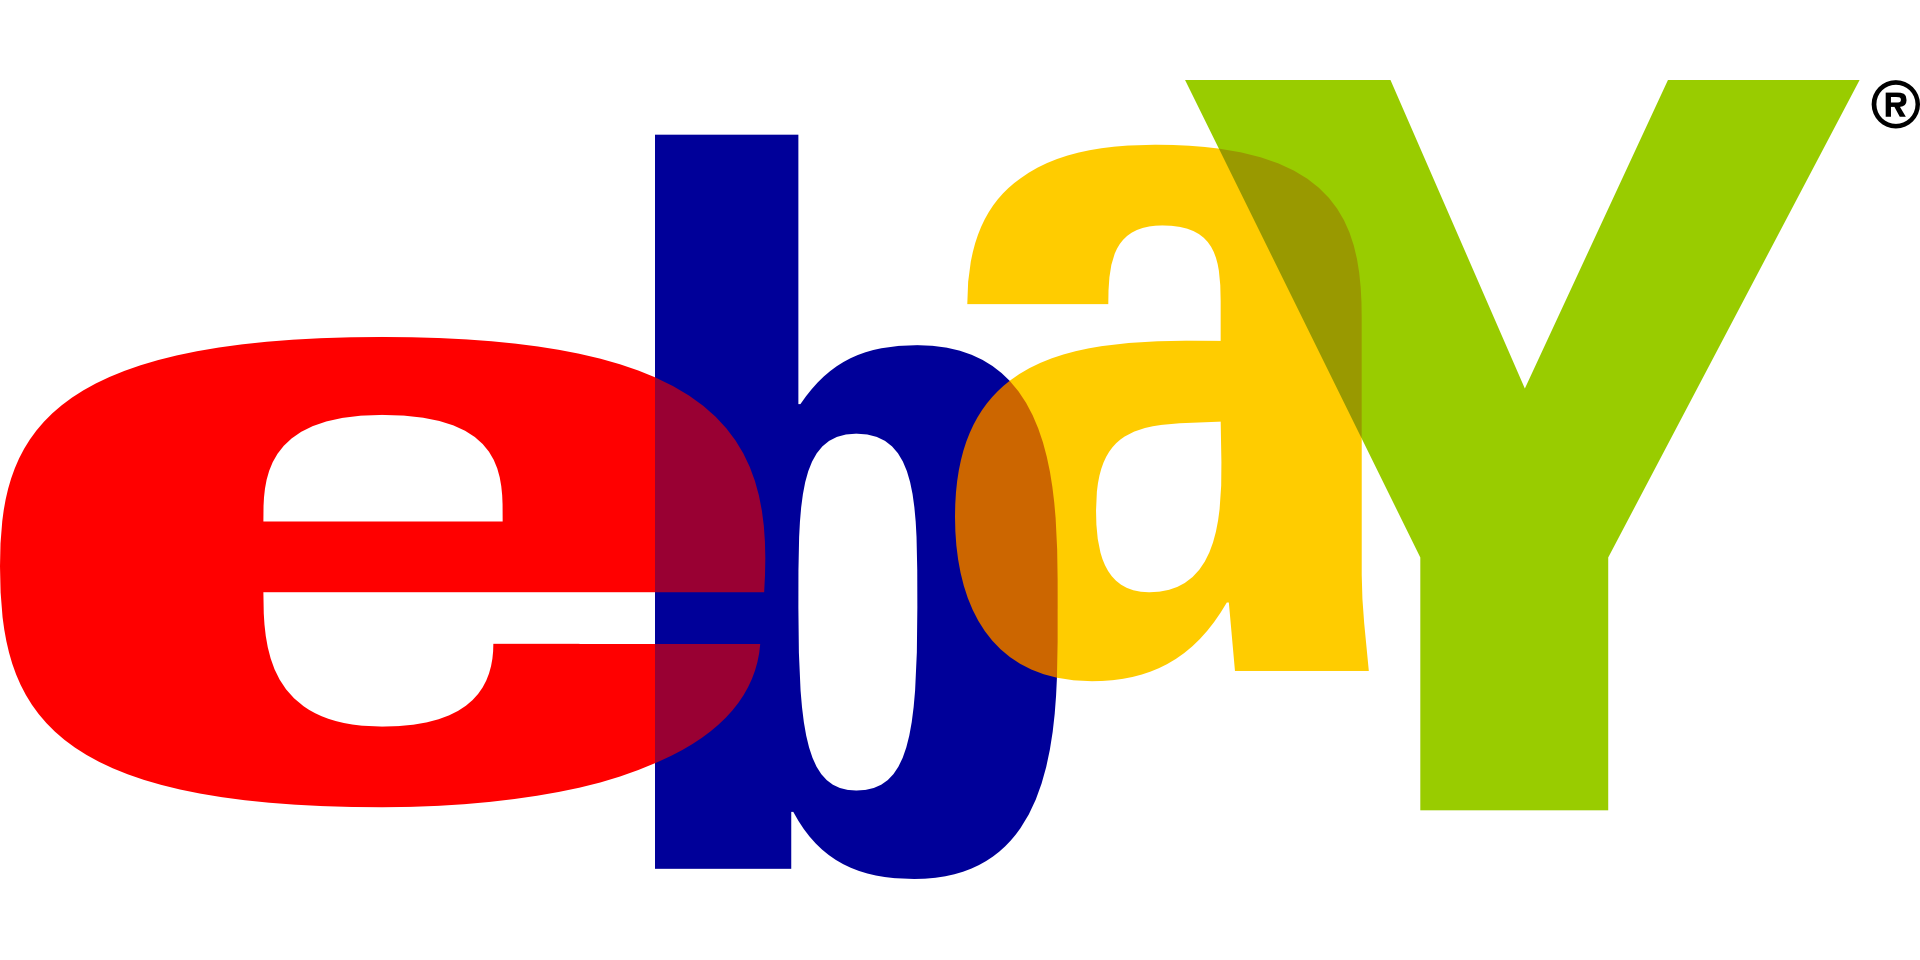 Ebay Germany Site